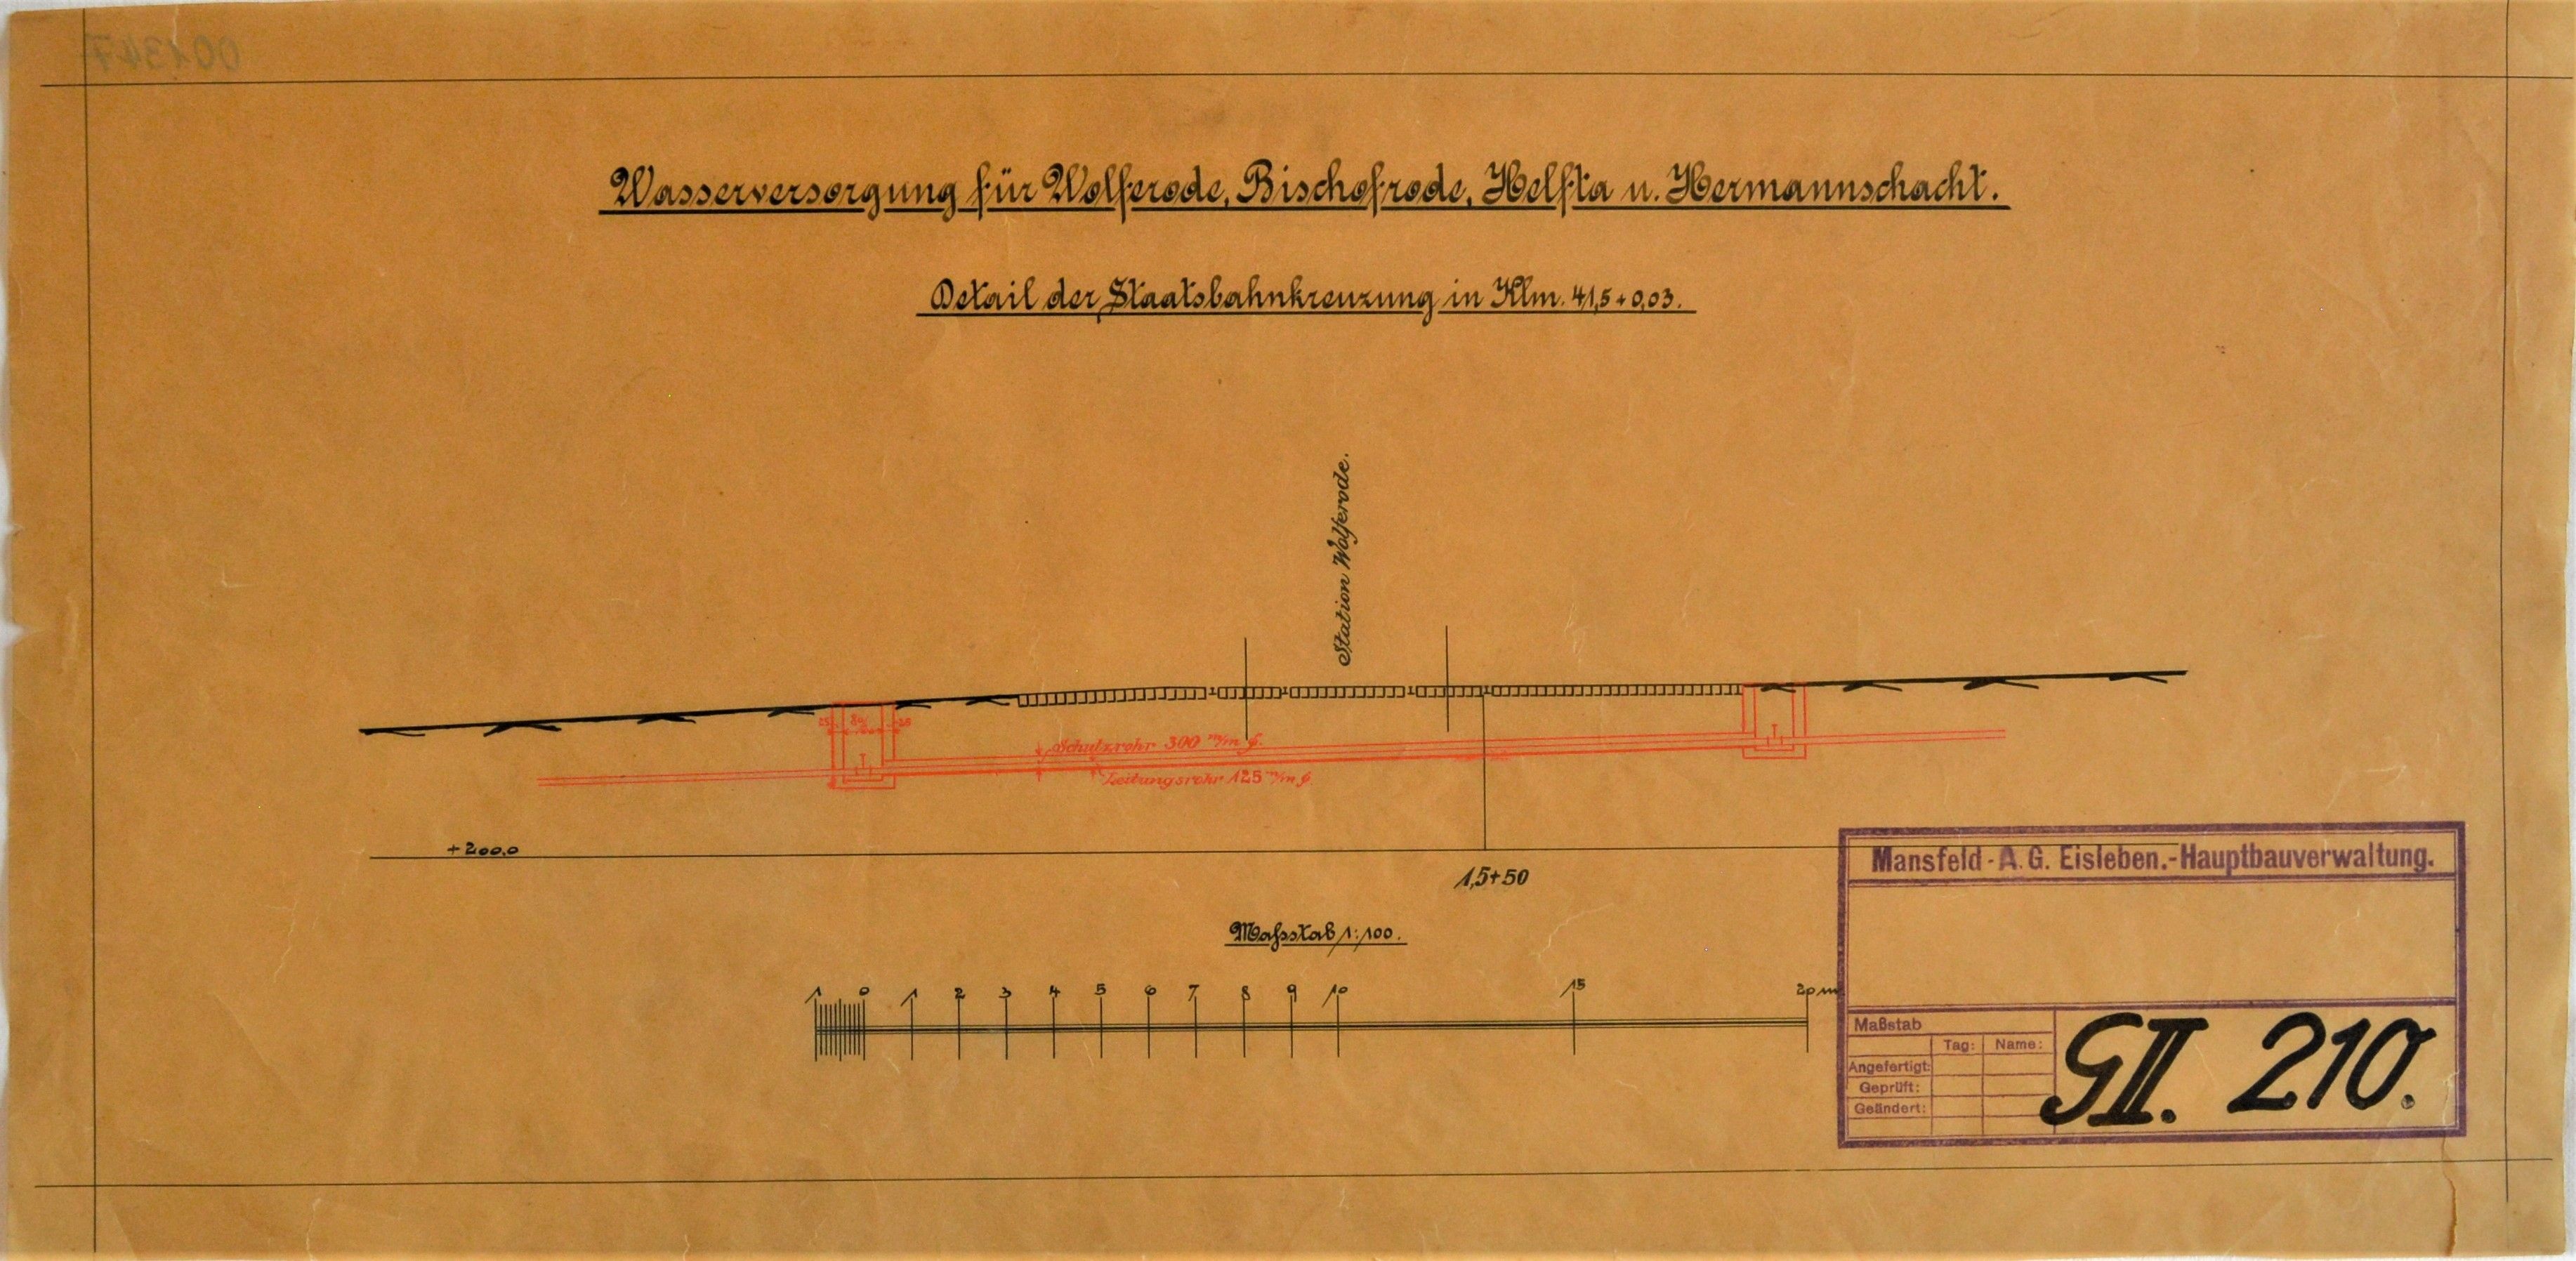 Wasserversorgung für Wolferode, Bischofrode, Helfta und Hermannschacht. Detail der Staatsbahnkreuzung in Klm. 41,5 + 0,03 (Mansfeld-Museum im Humboldt-Schloss CC BY-NC-SA)